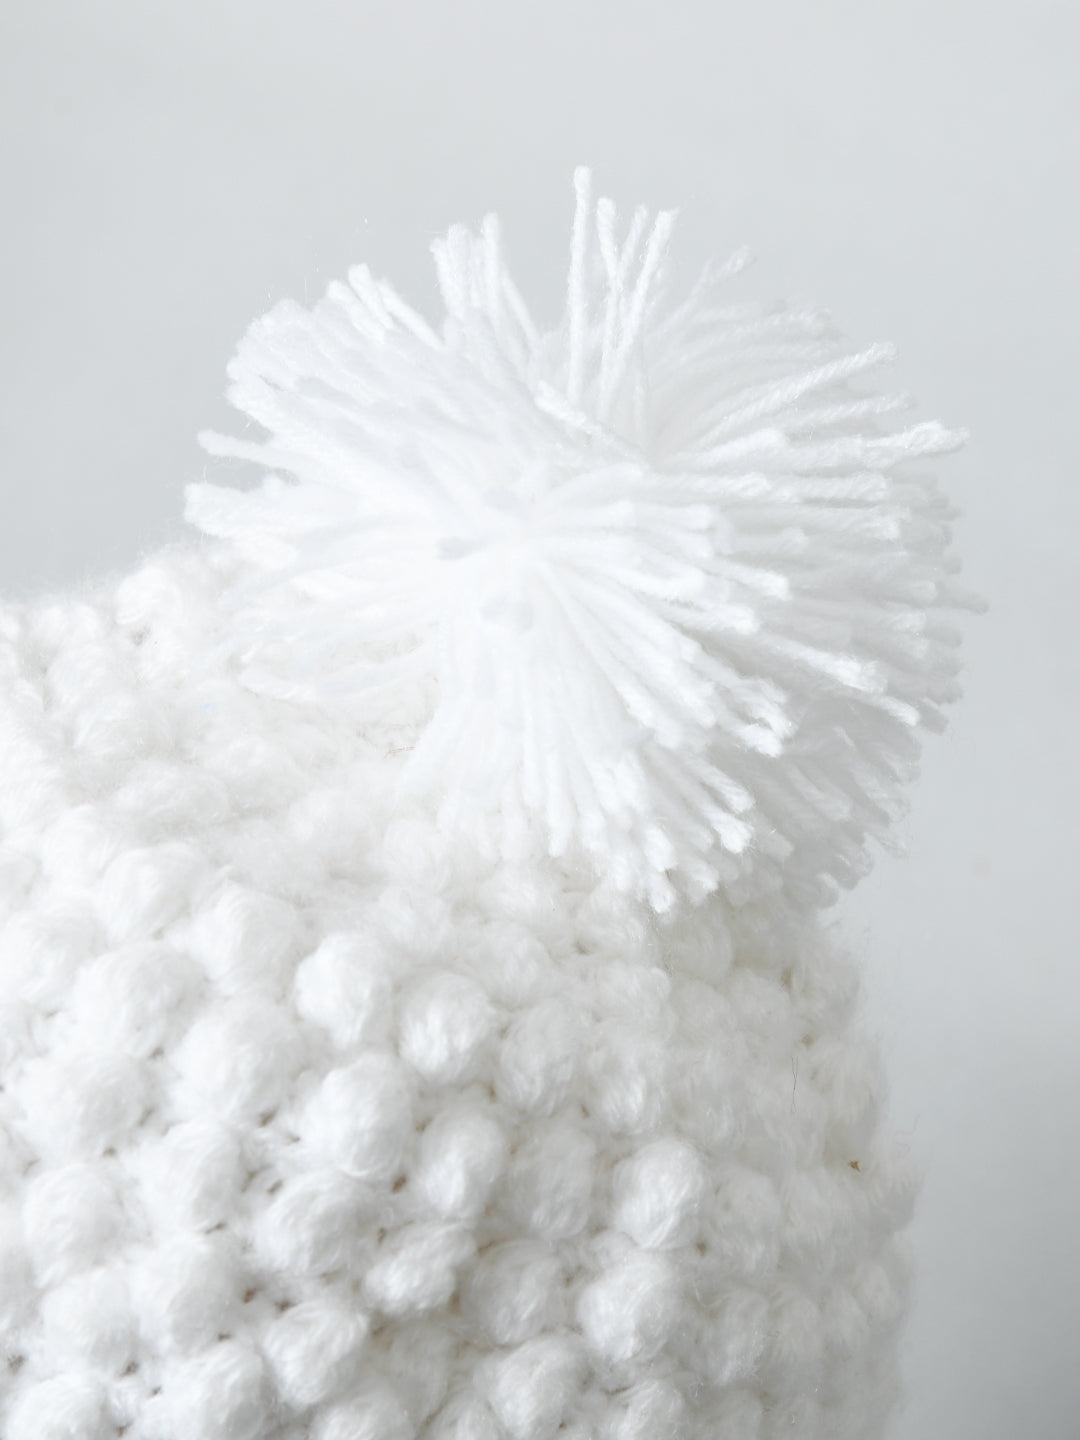 White Handmade Woollen Pom Pom Cap for kids